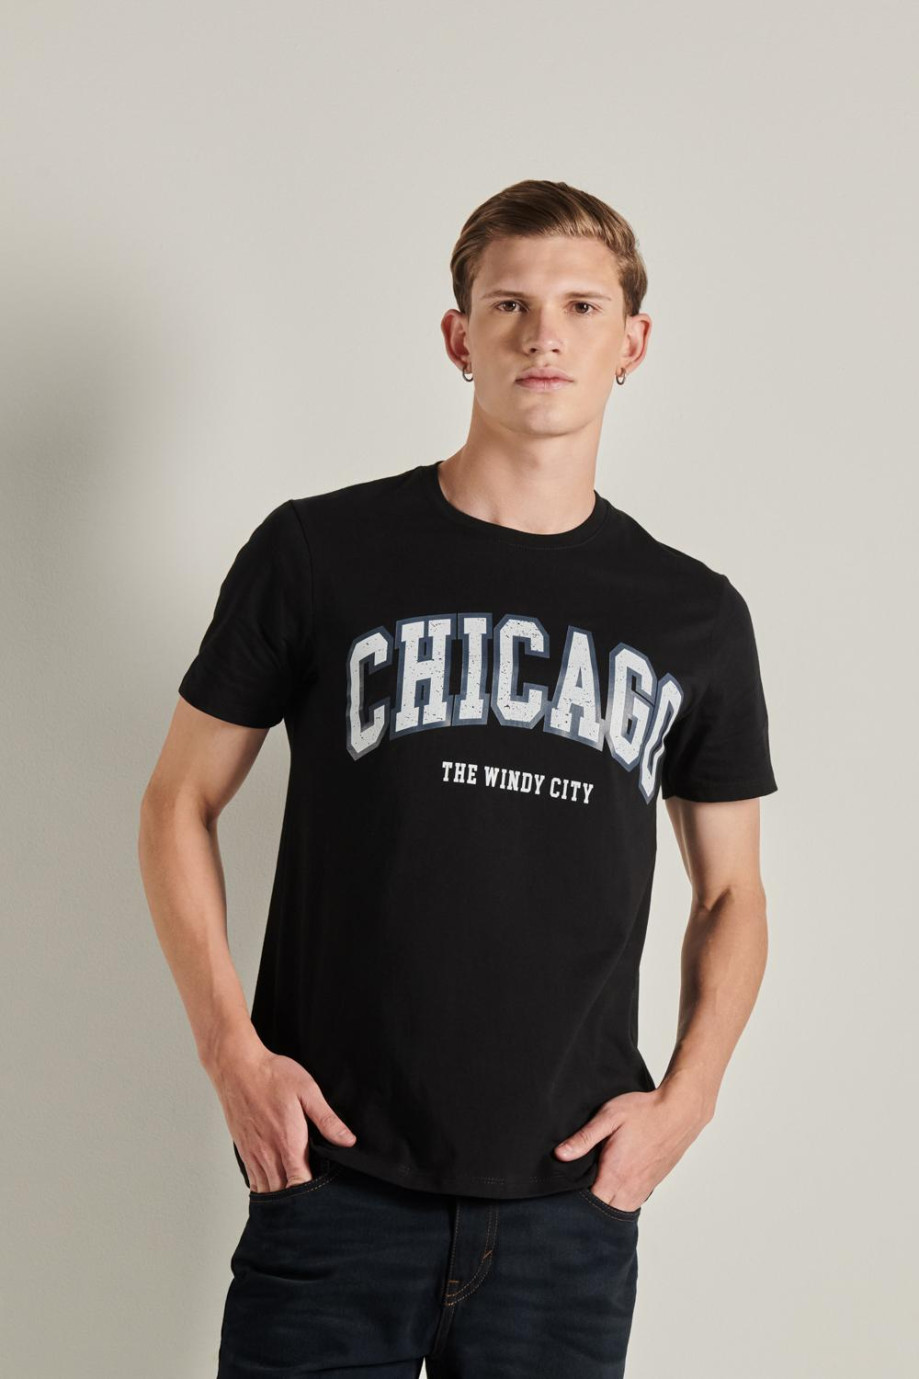 Camiseta unicolor con diseño college y cuello redondo